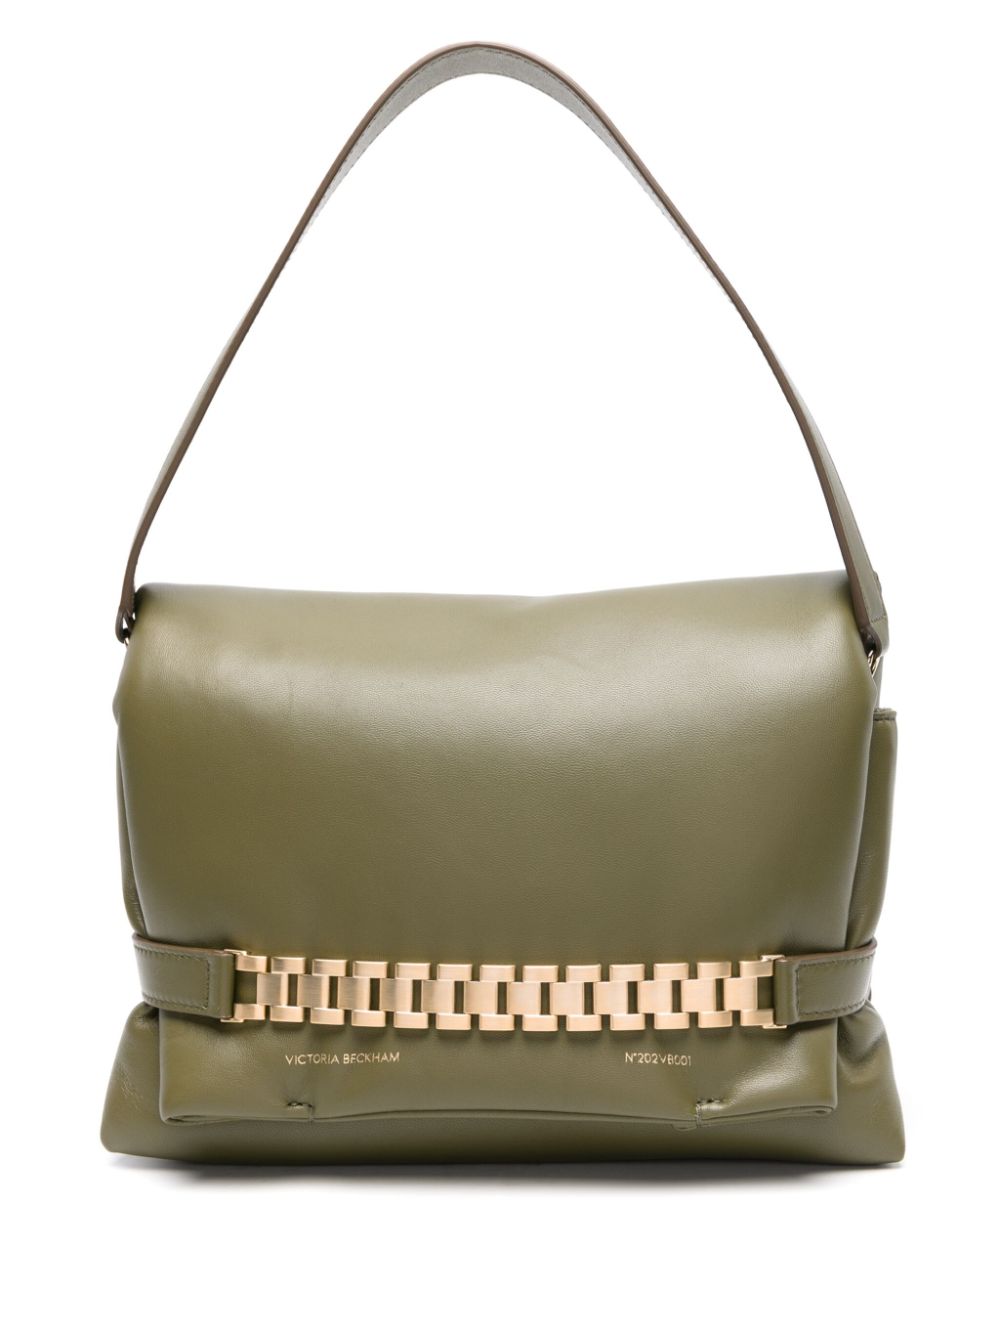 Victoria Beckham Puffy Chain leather tote bag - Green von Victoria Beckham